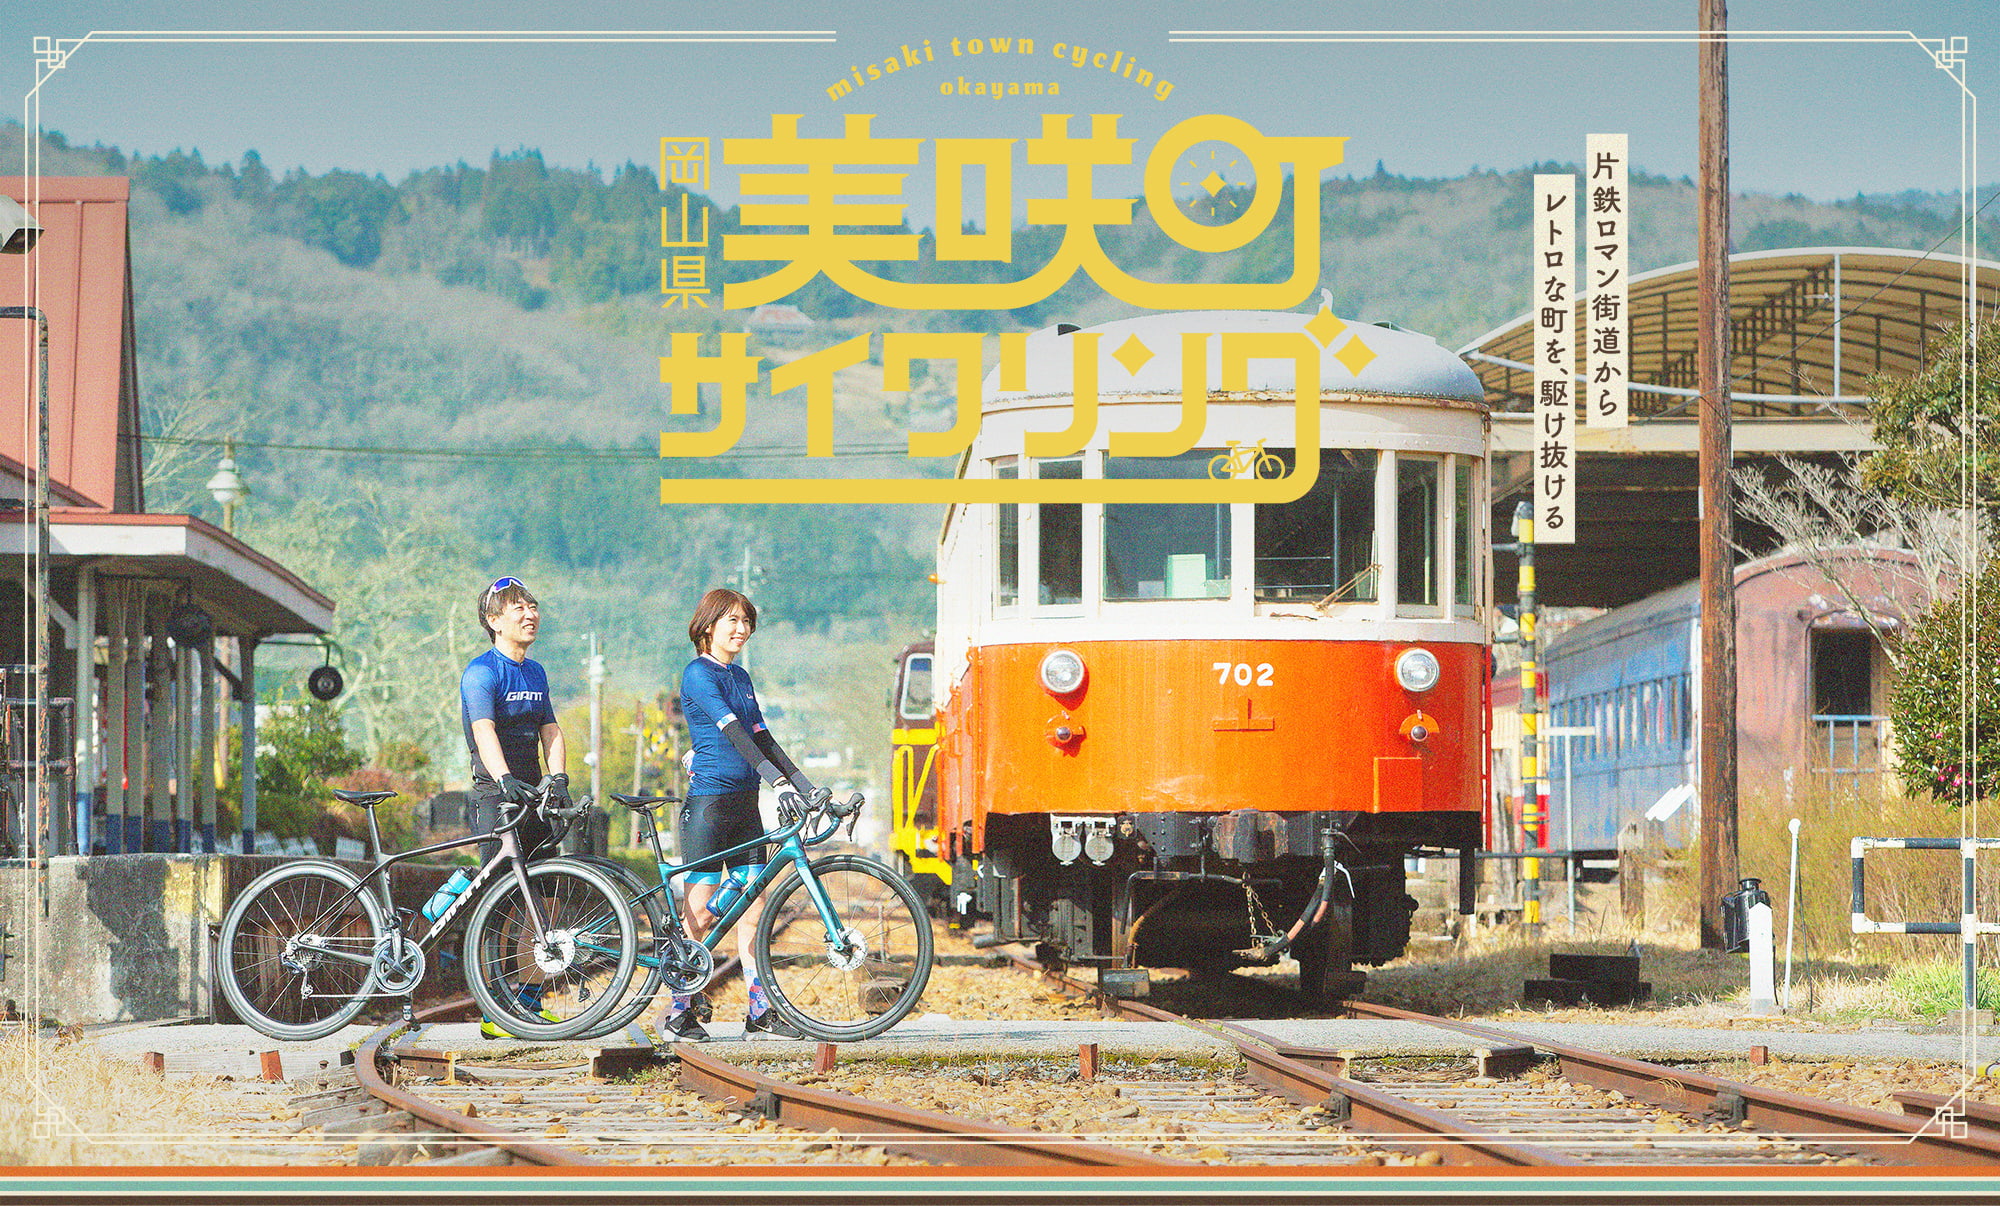 岡山県美咲町サイクリング 片鉄ロマン街道からレトロな街を、駆け抜ける